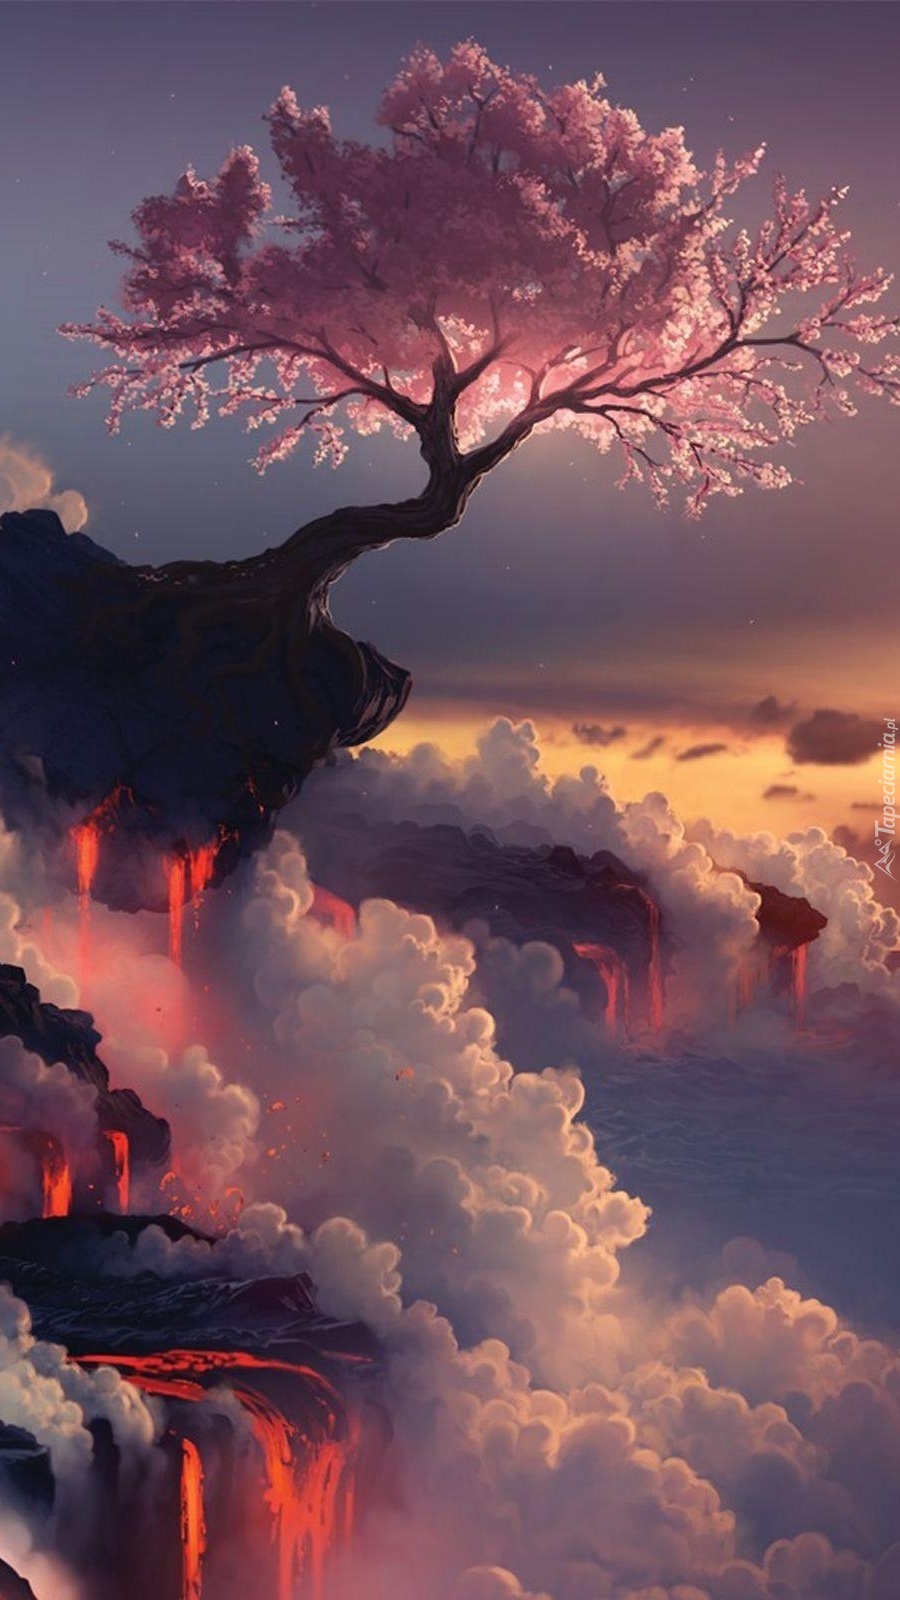 Drzewo pochylone nad wulkanem